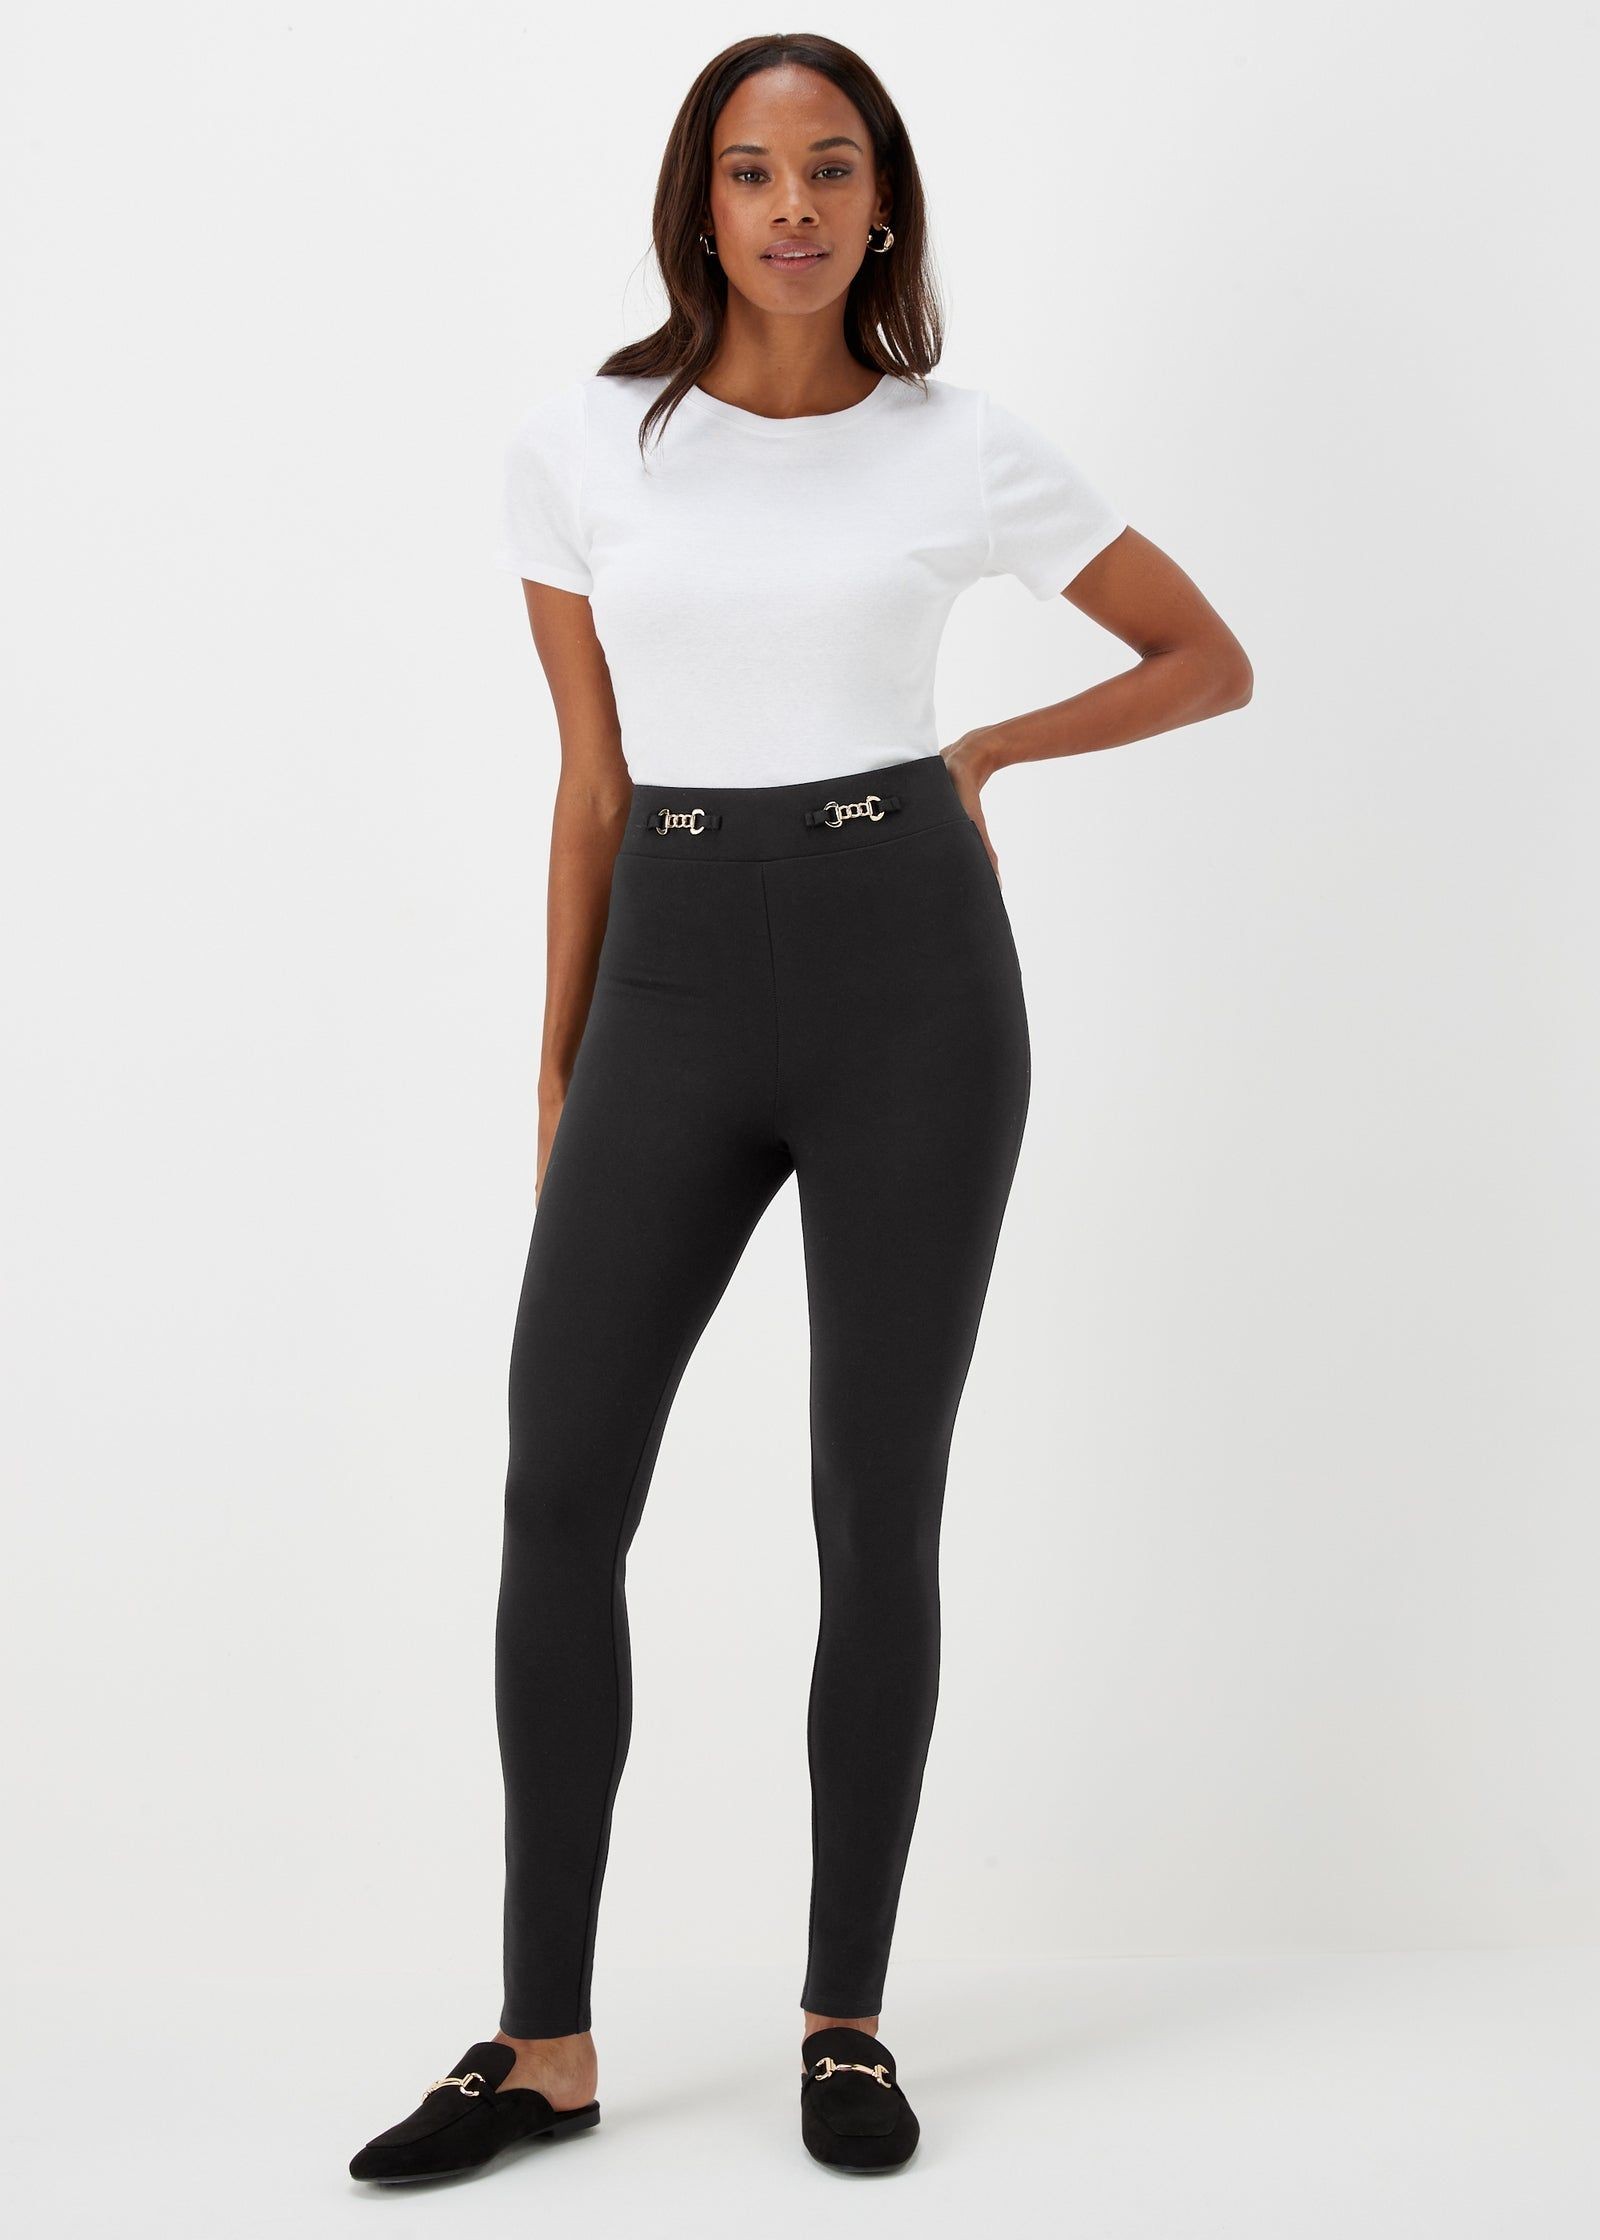 Buy Black Full Length Cotton Leggings – Black in KSA - bfab